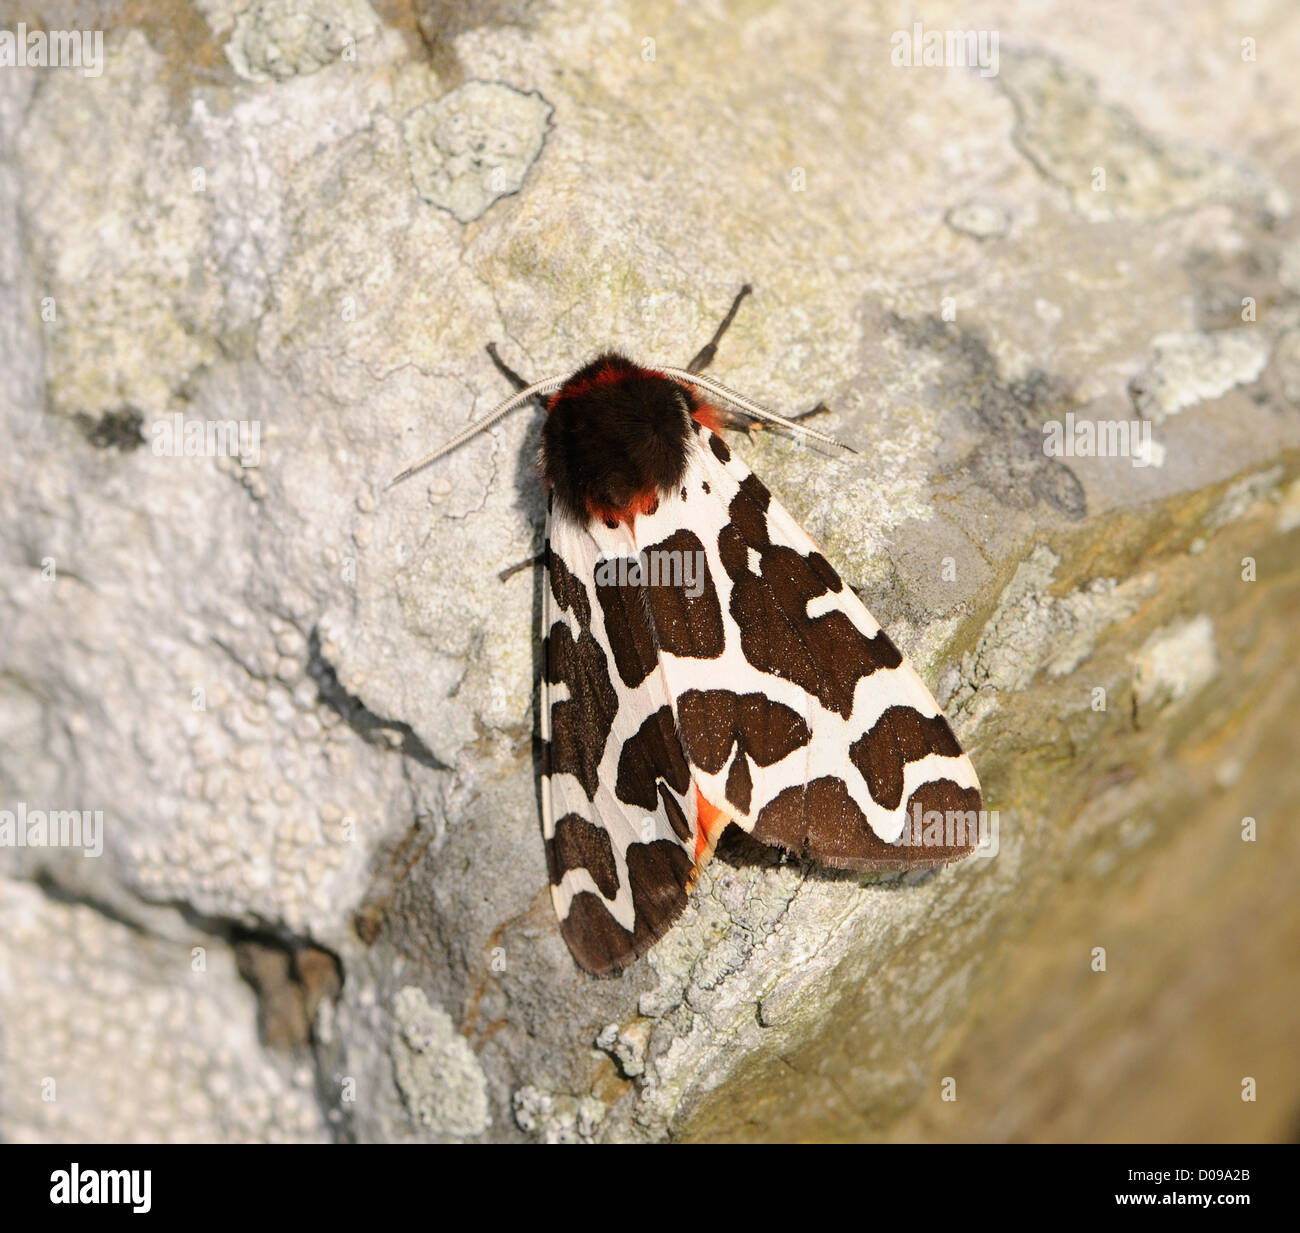 Jardín Tiger Moth (Arctia caja). El negro marrón fore alas puede verse con las alas posteriores naranja peeping a través. Orkney Foto de stock